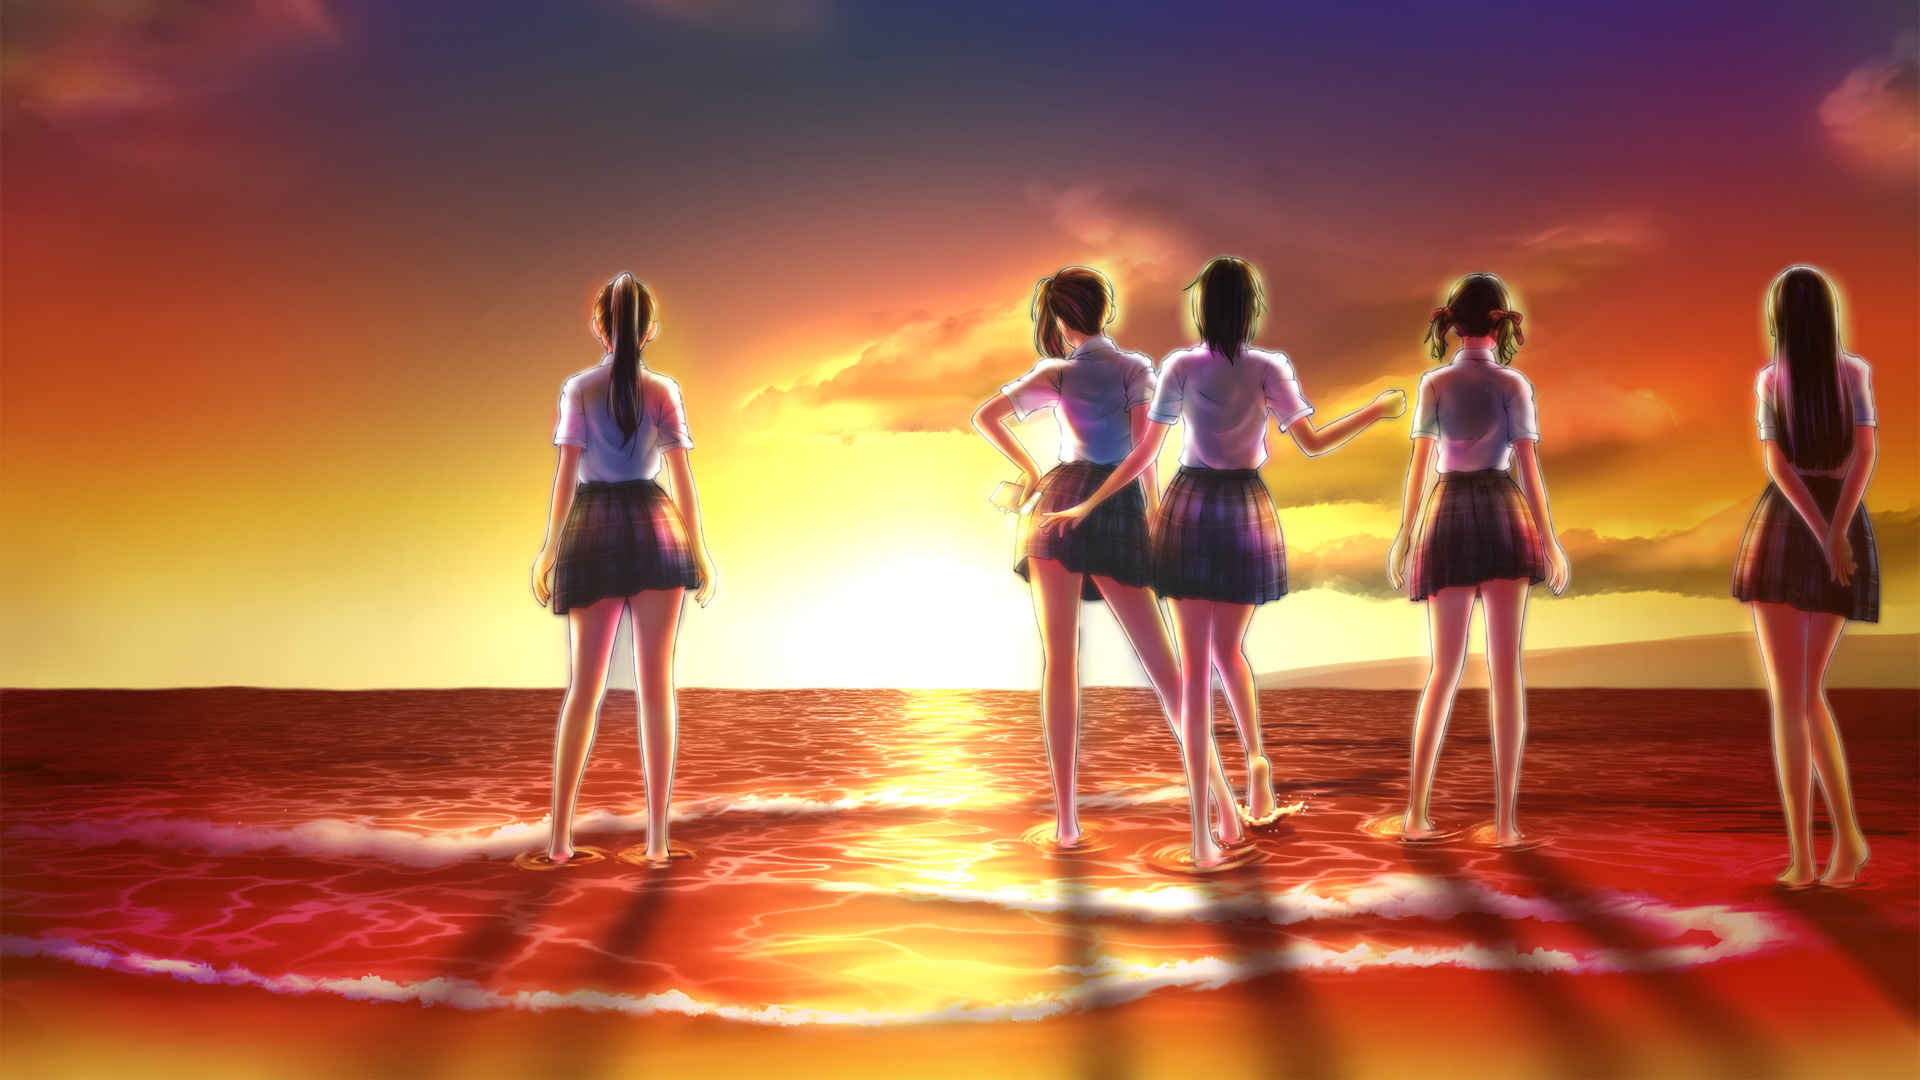 黄昏海边五个动漫女孩背影壁纸-